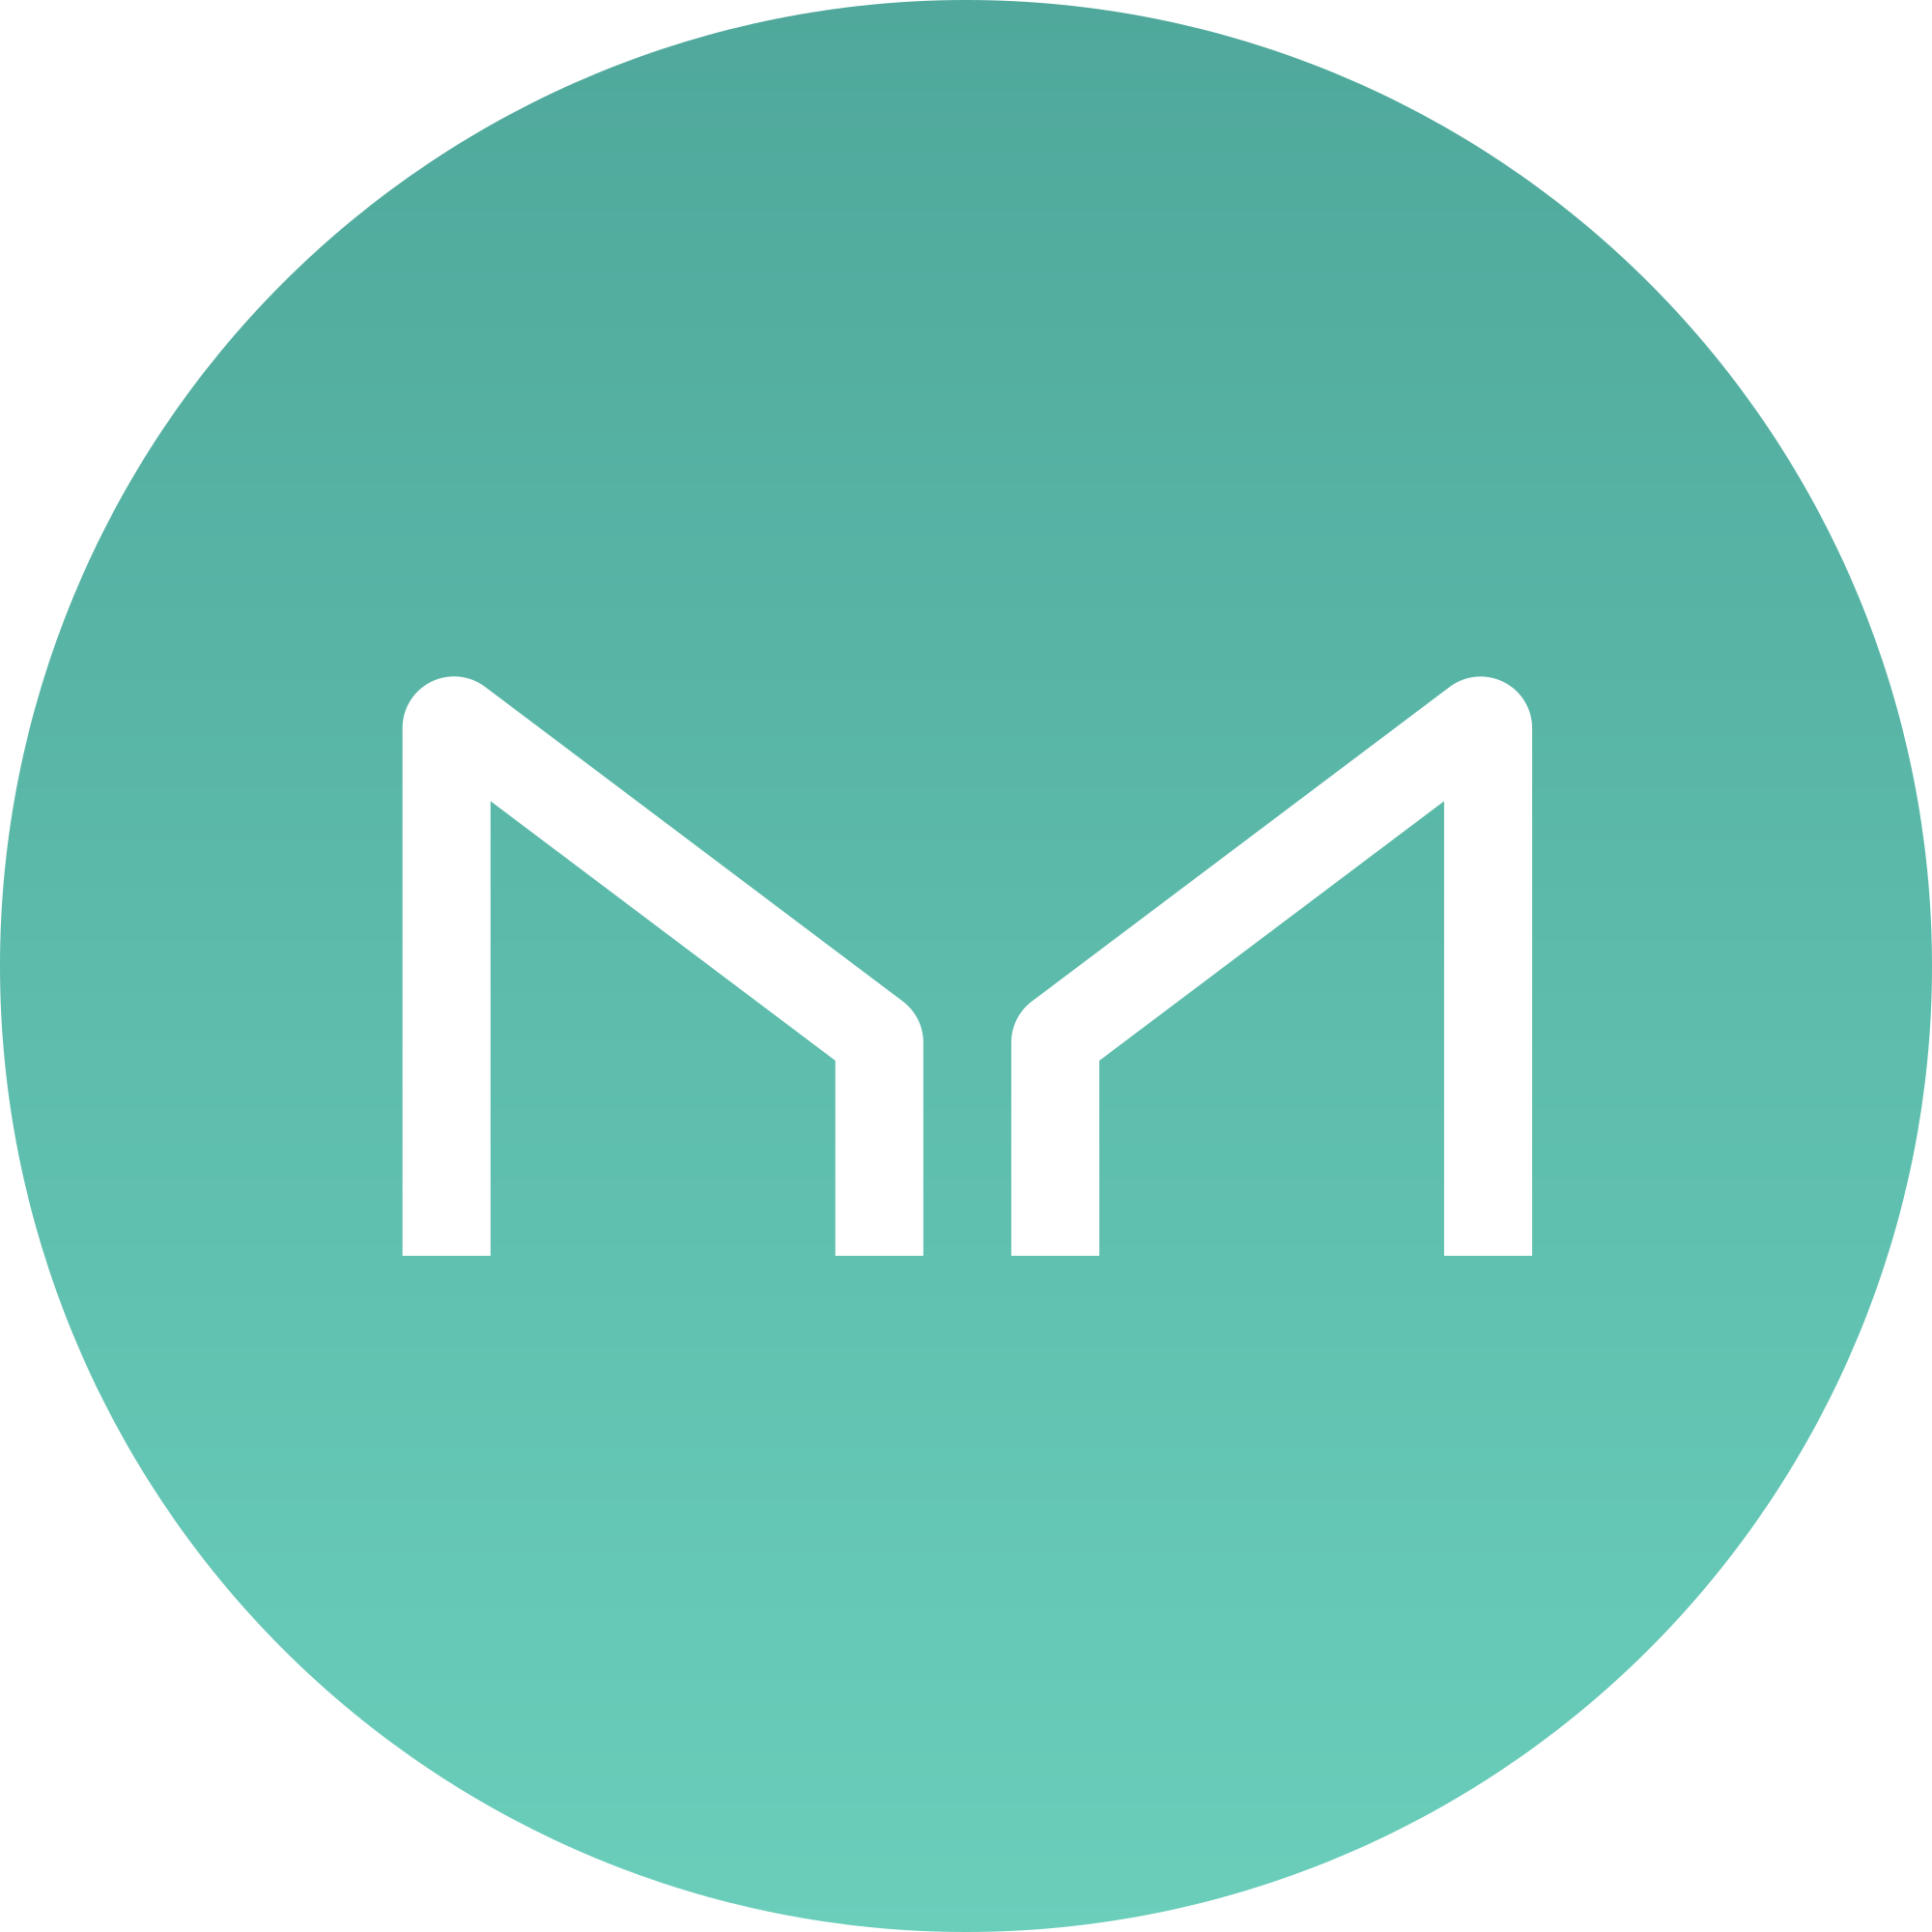 Download Maker (MKR) Logo .SVG and .PNG Files Download